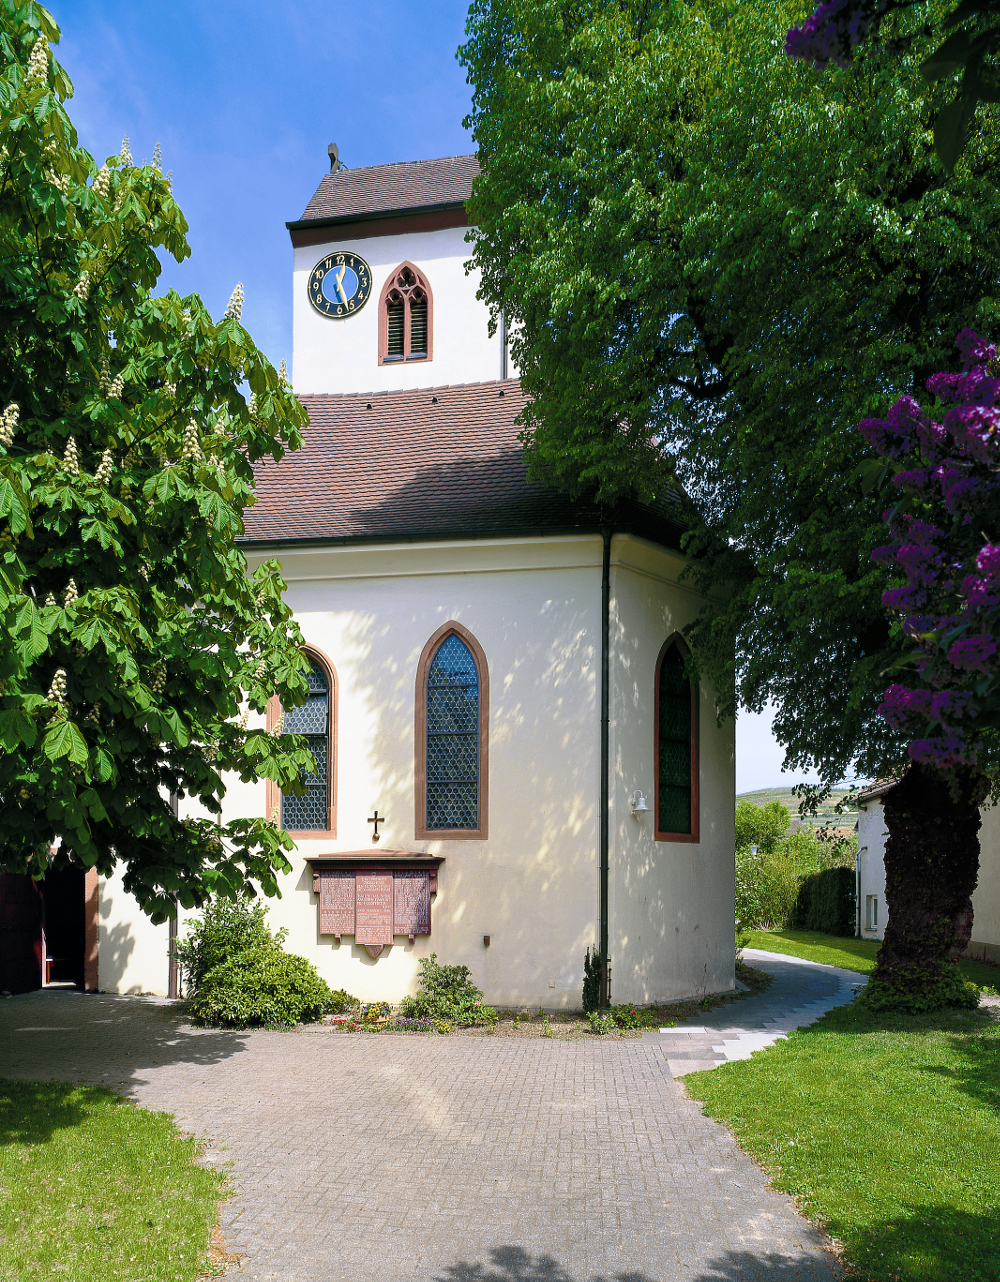 Kirche Bischoffingen